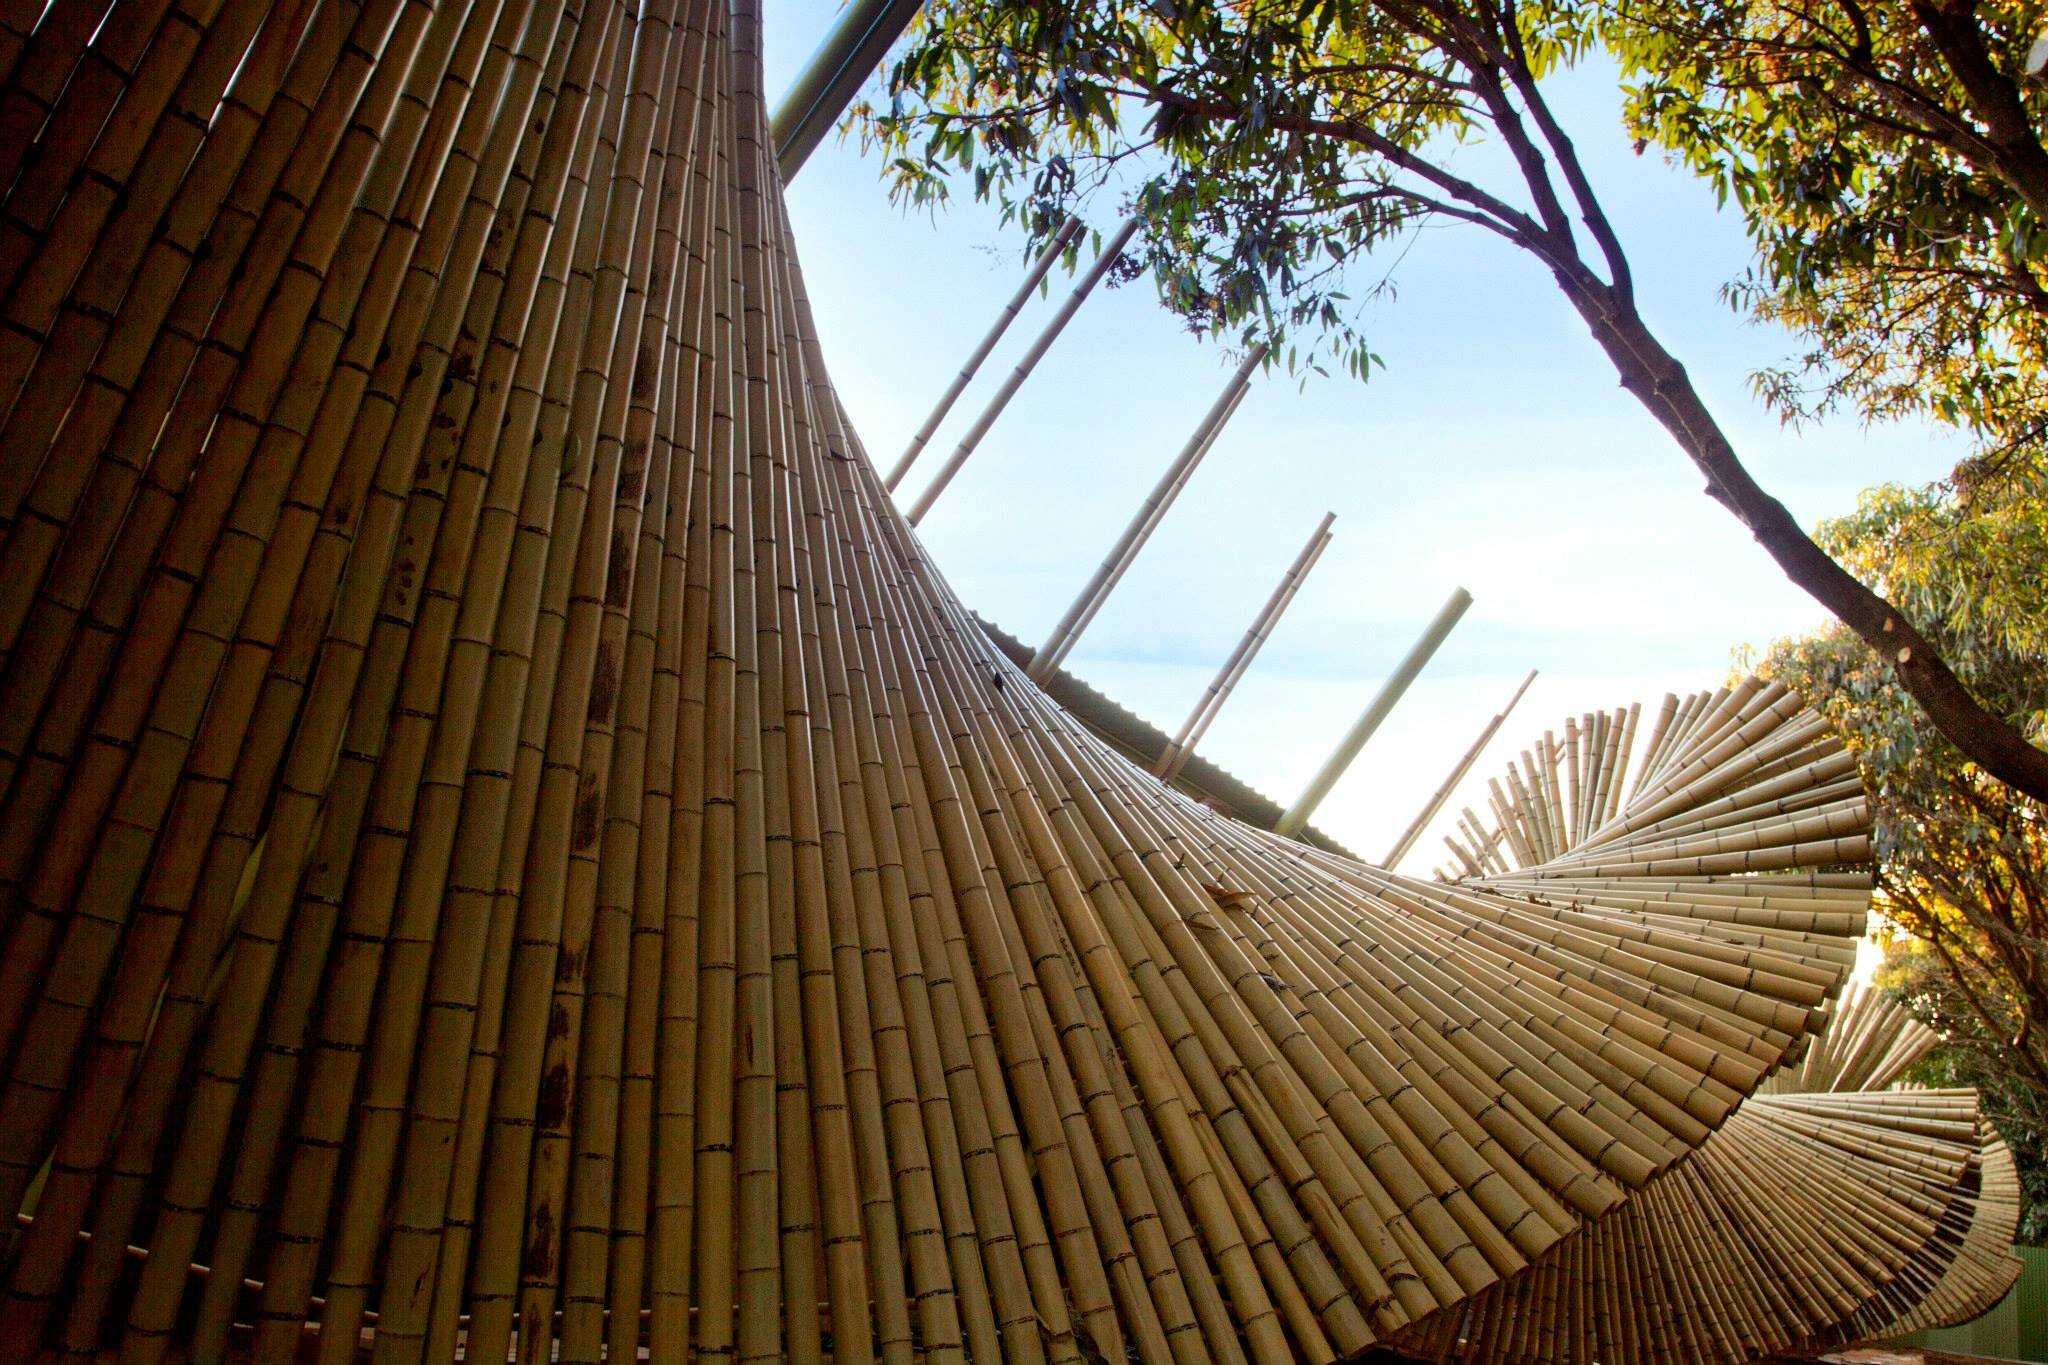 instalação de bambu casacor brasília 2011 sustentabilidade